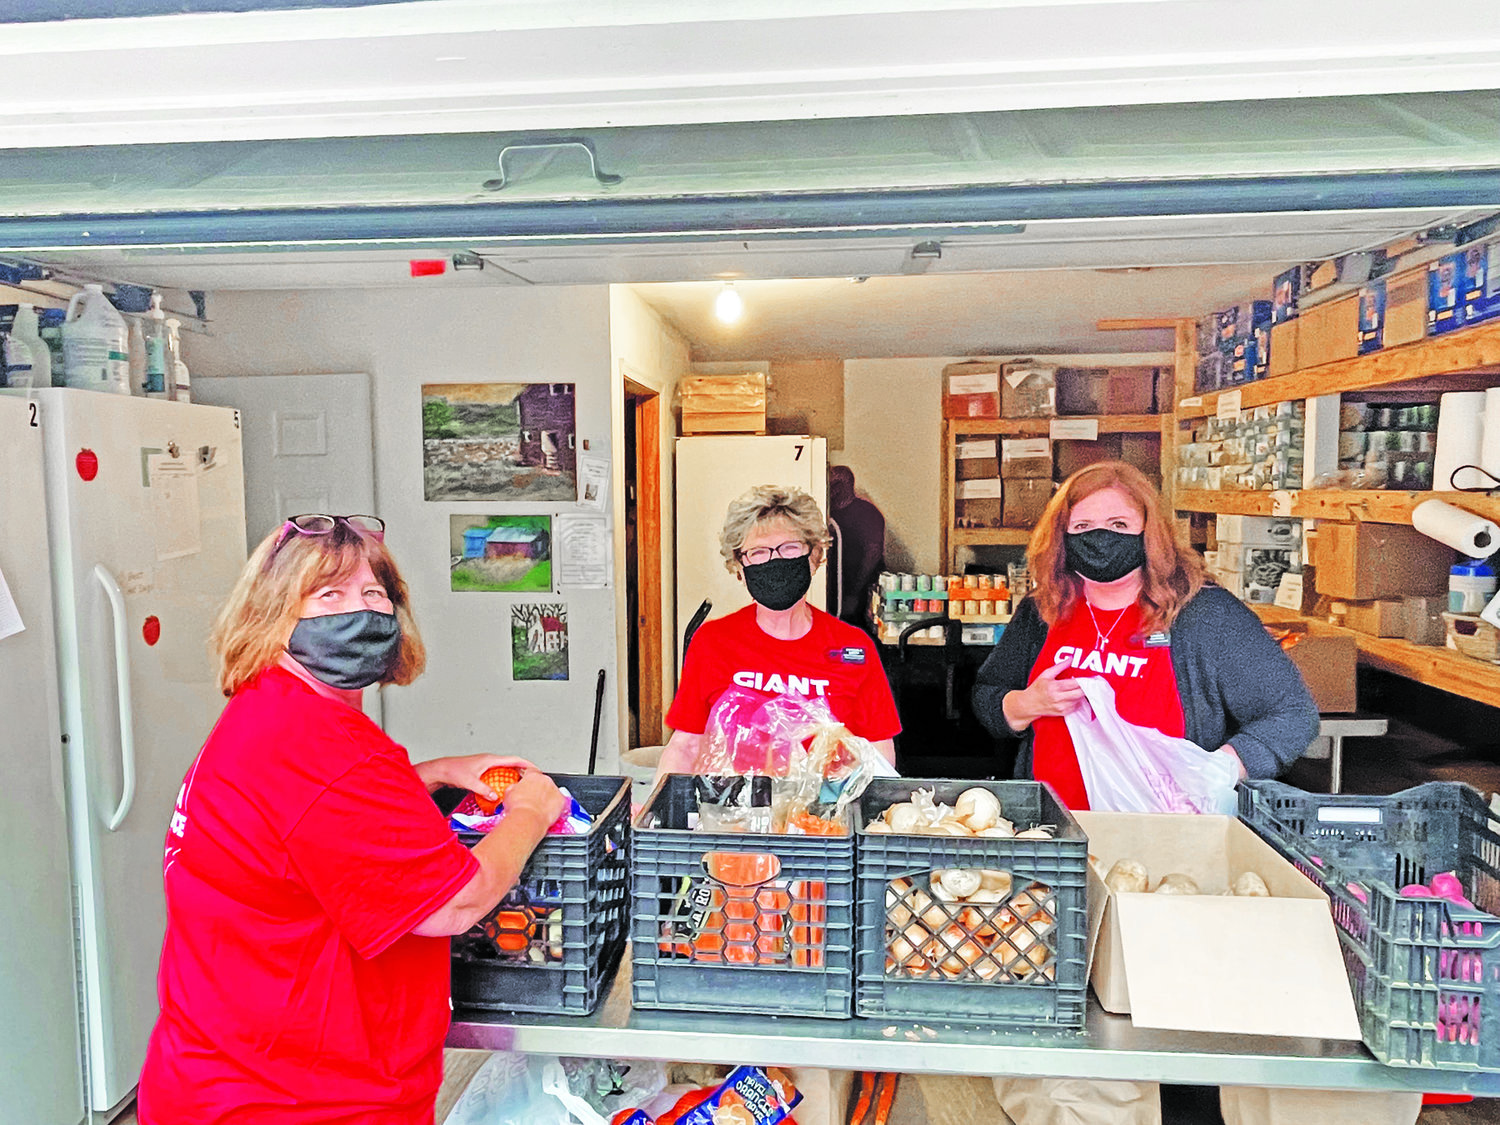 Giant team members volunteer at the Doylestown Community Food Bank.